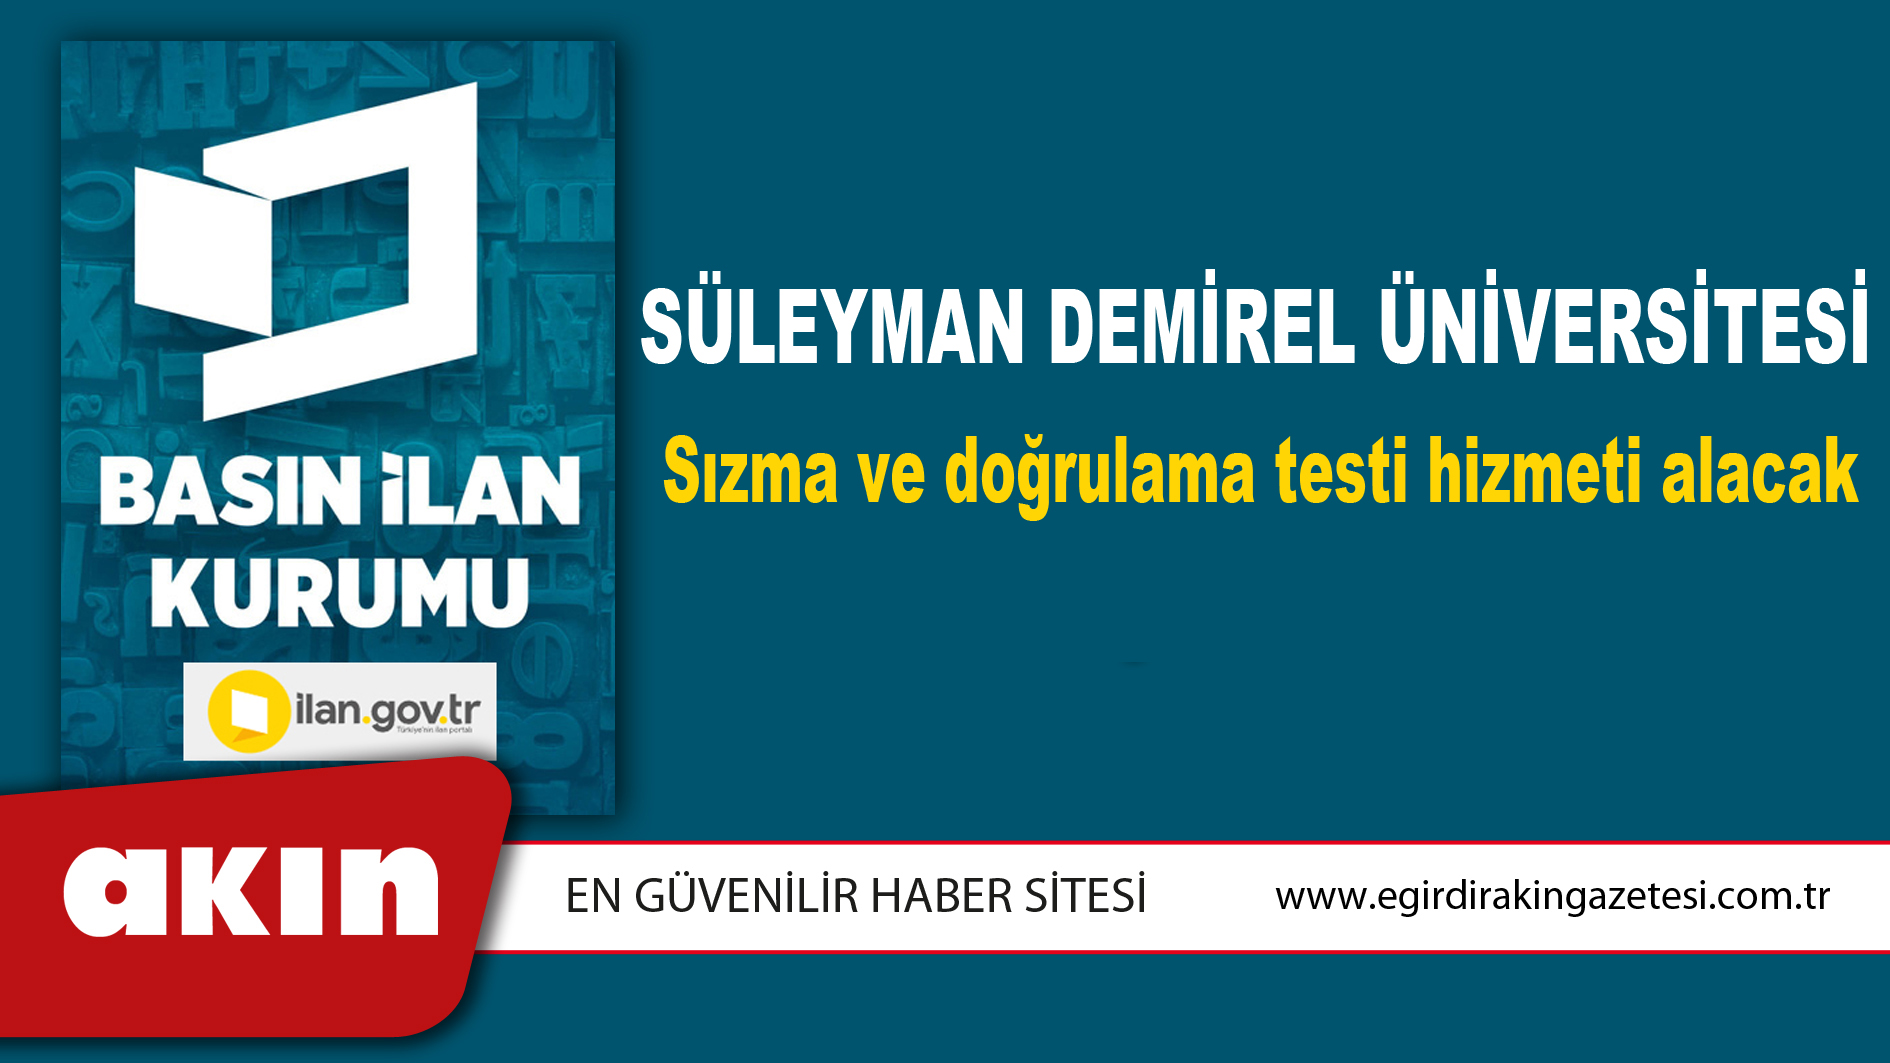 Süleyman Demirel Üniversitesi Sızma ve doğrulama testi hizmeti alacak